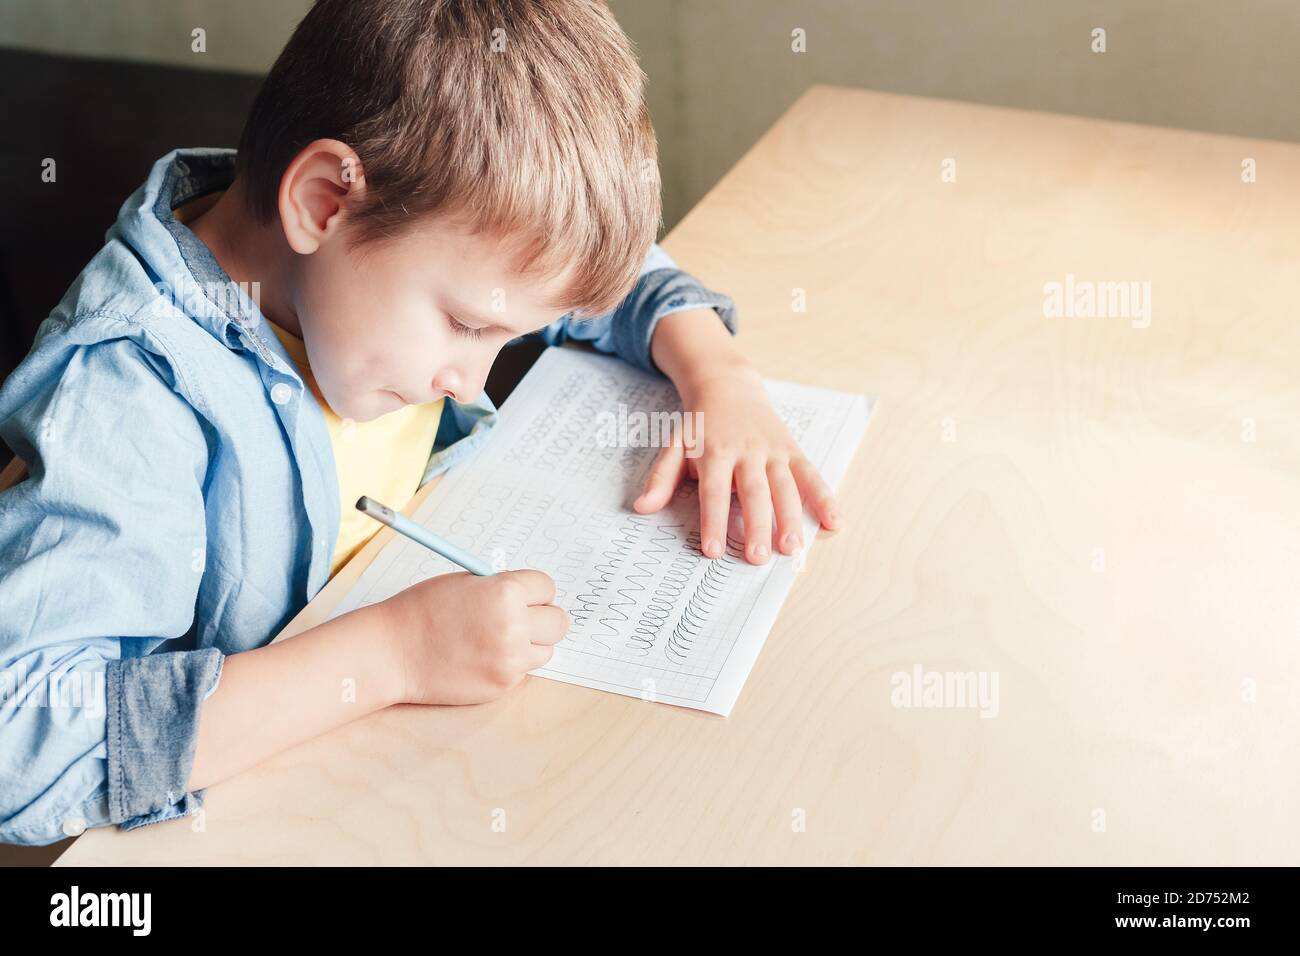 Nahaufnahme von niedlichen Jungen tun seine Hausaufgaben. Kind verschiedene Linien mit Bleistift schreiben. Konzept der Kindererziehung. Stockfoto